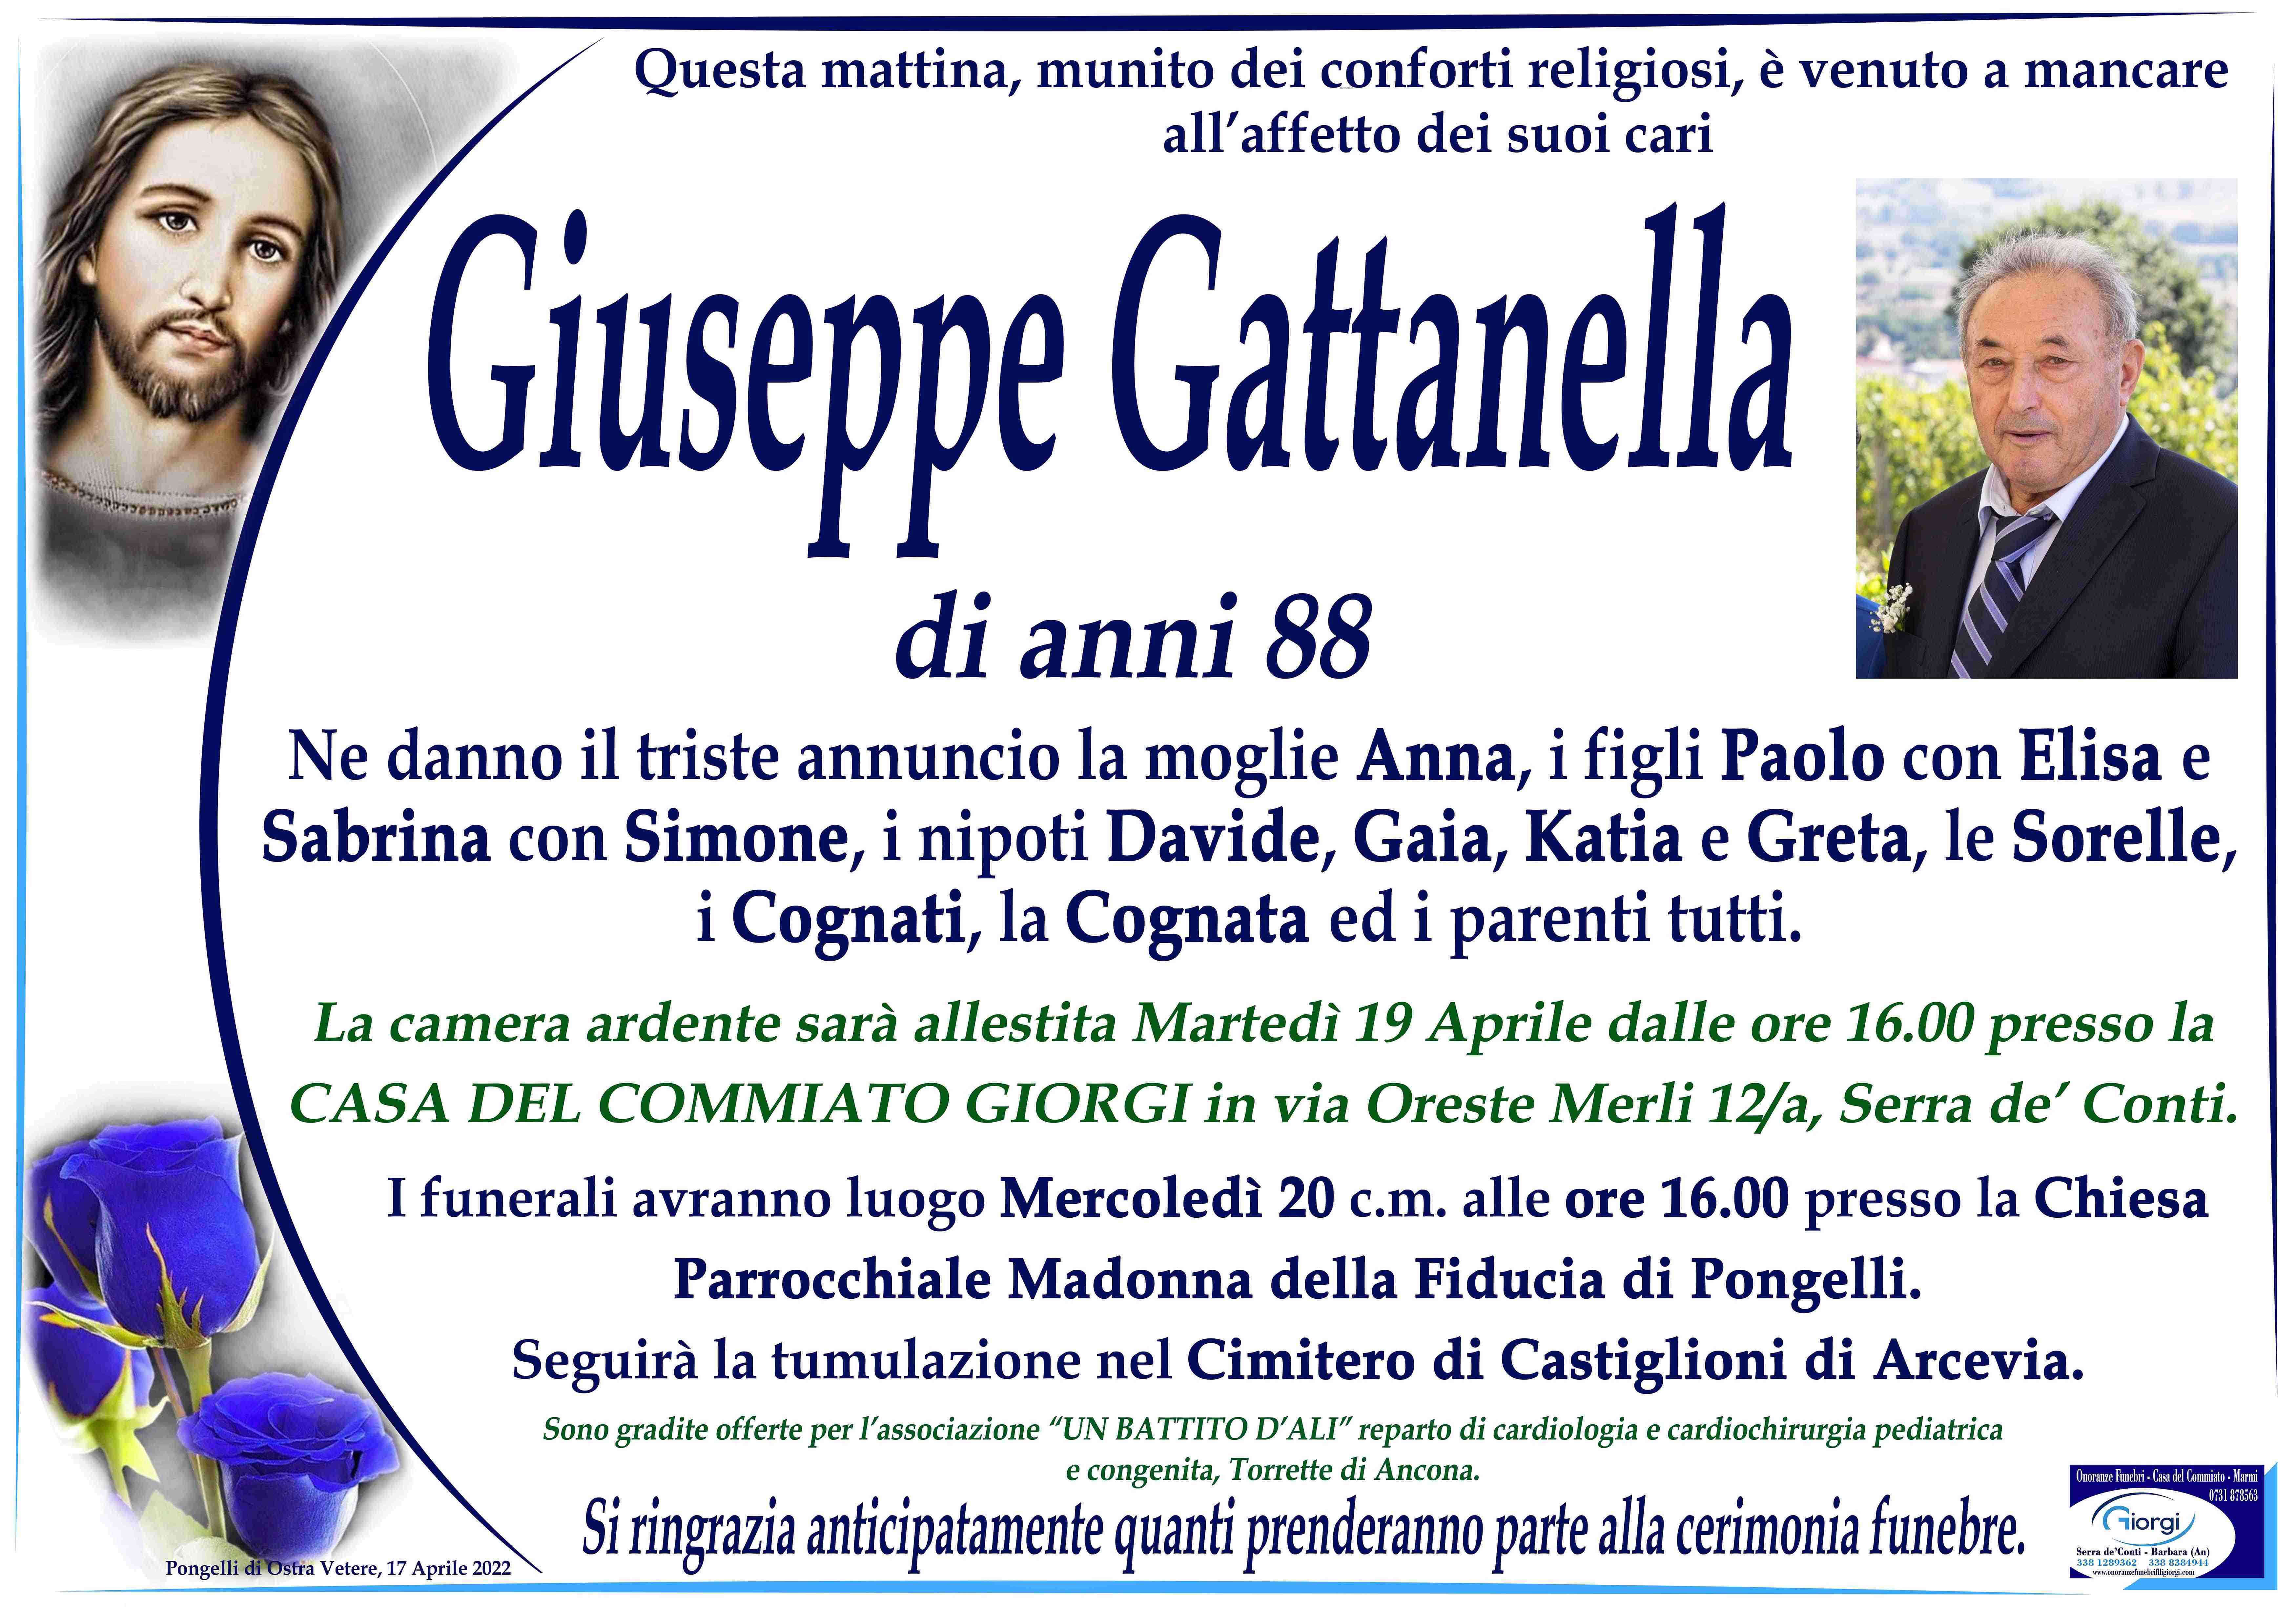 Giuseppe Gattanella